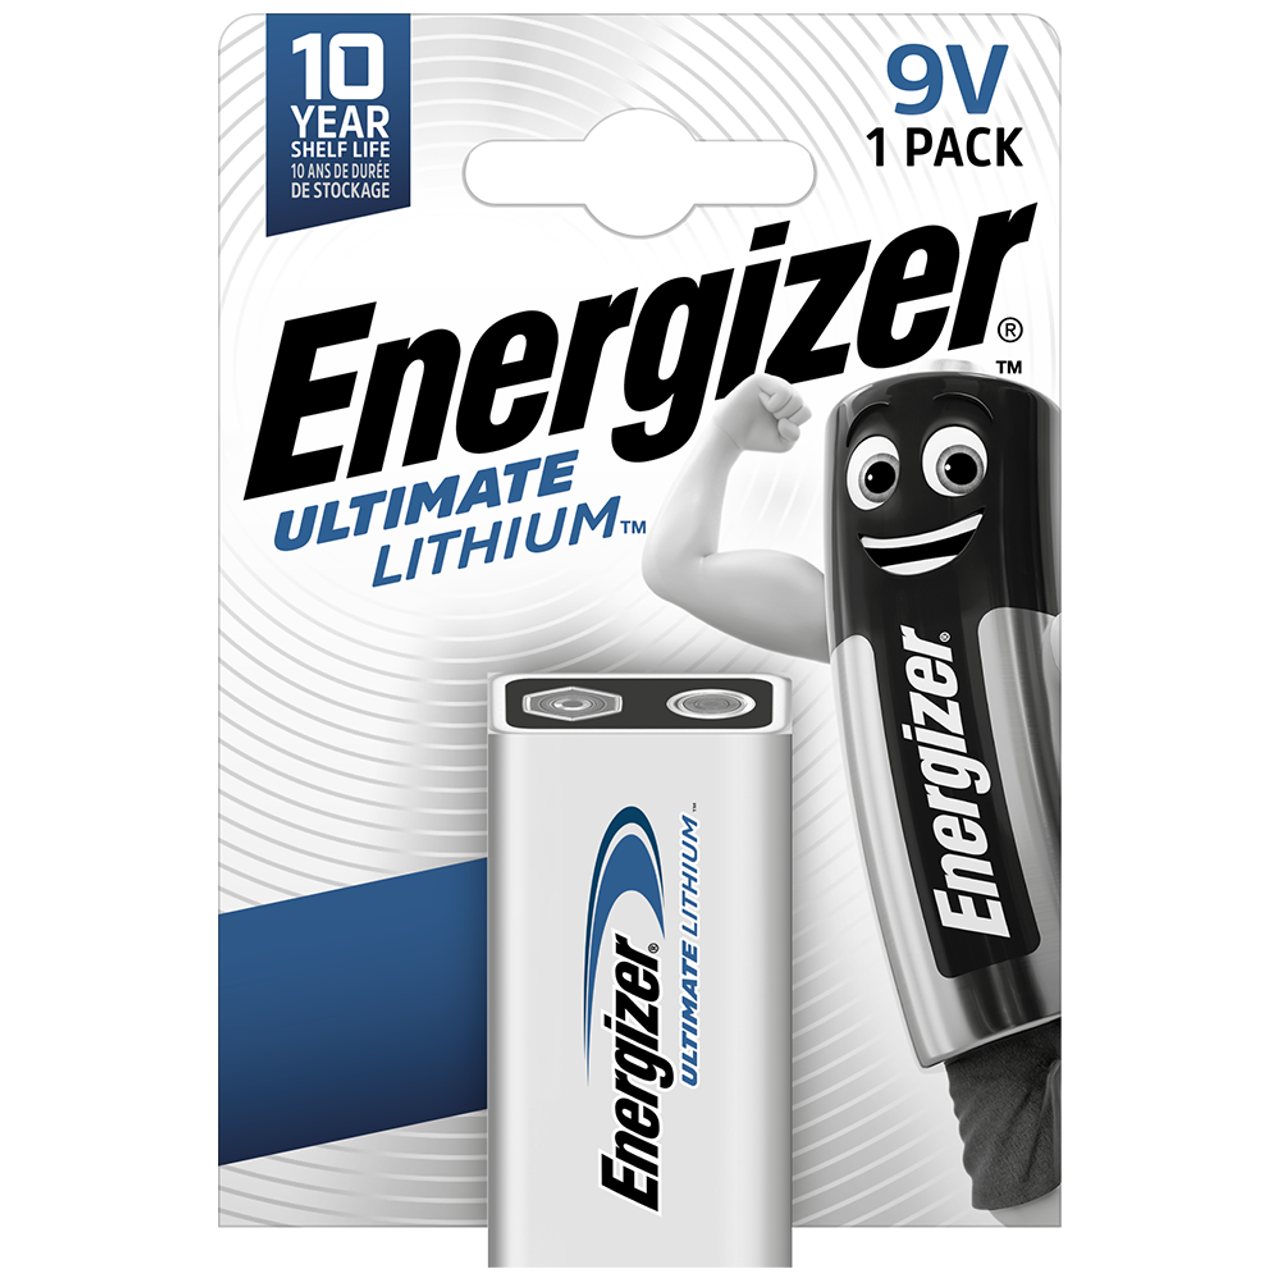 Energizer Ultimate Lithium Batterie 9V 1000 mAh au meilleur prix sur